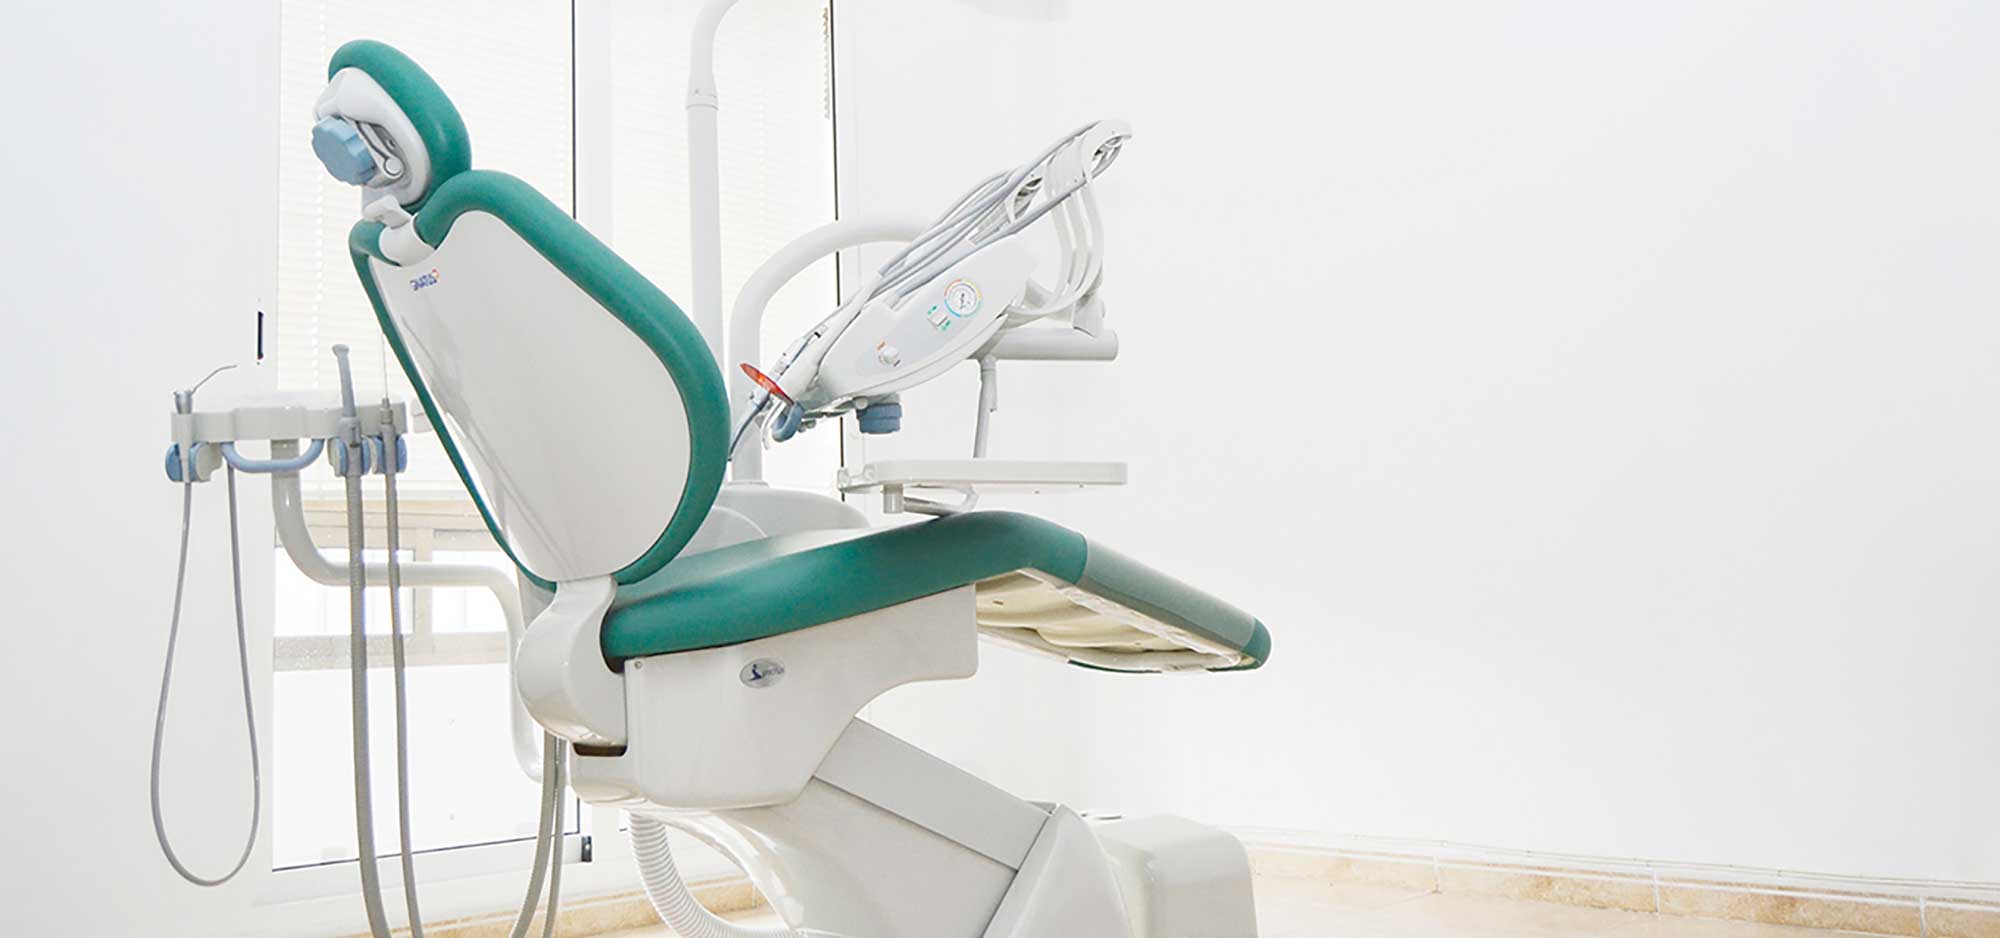 Imagen de las modernas instalaciones de la clínica odontológica Clínica Herrero. Tu dentista en Valencia